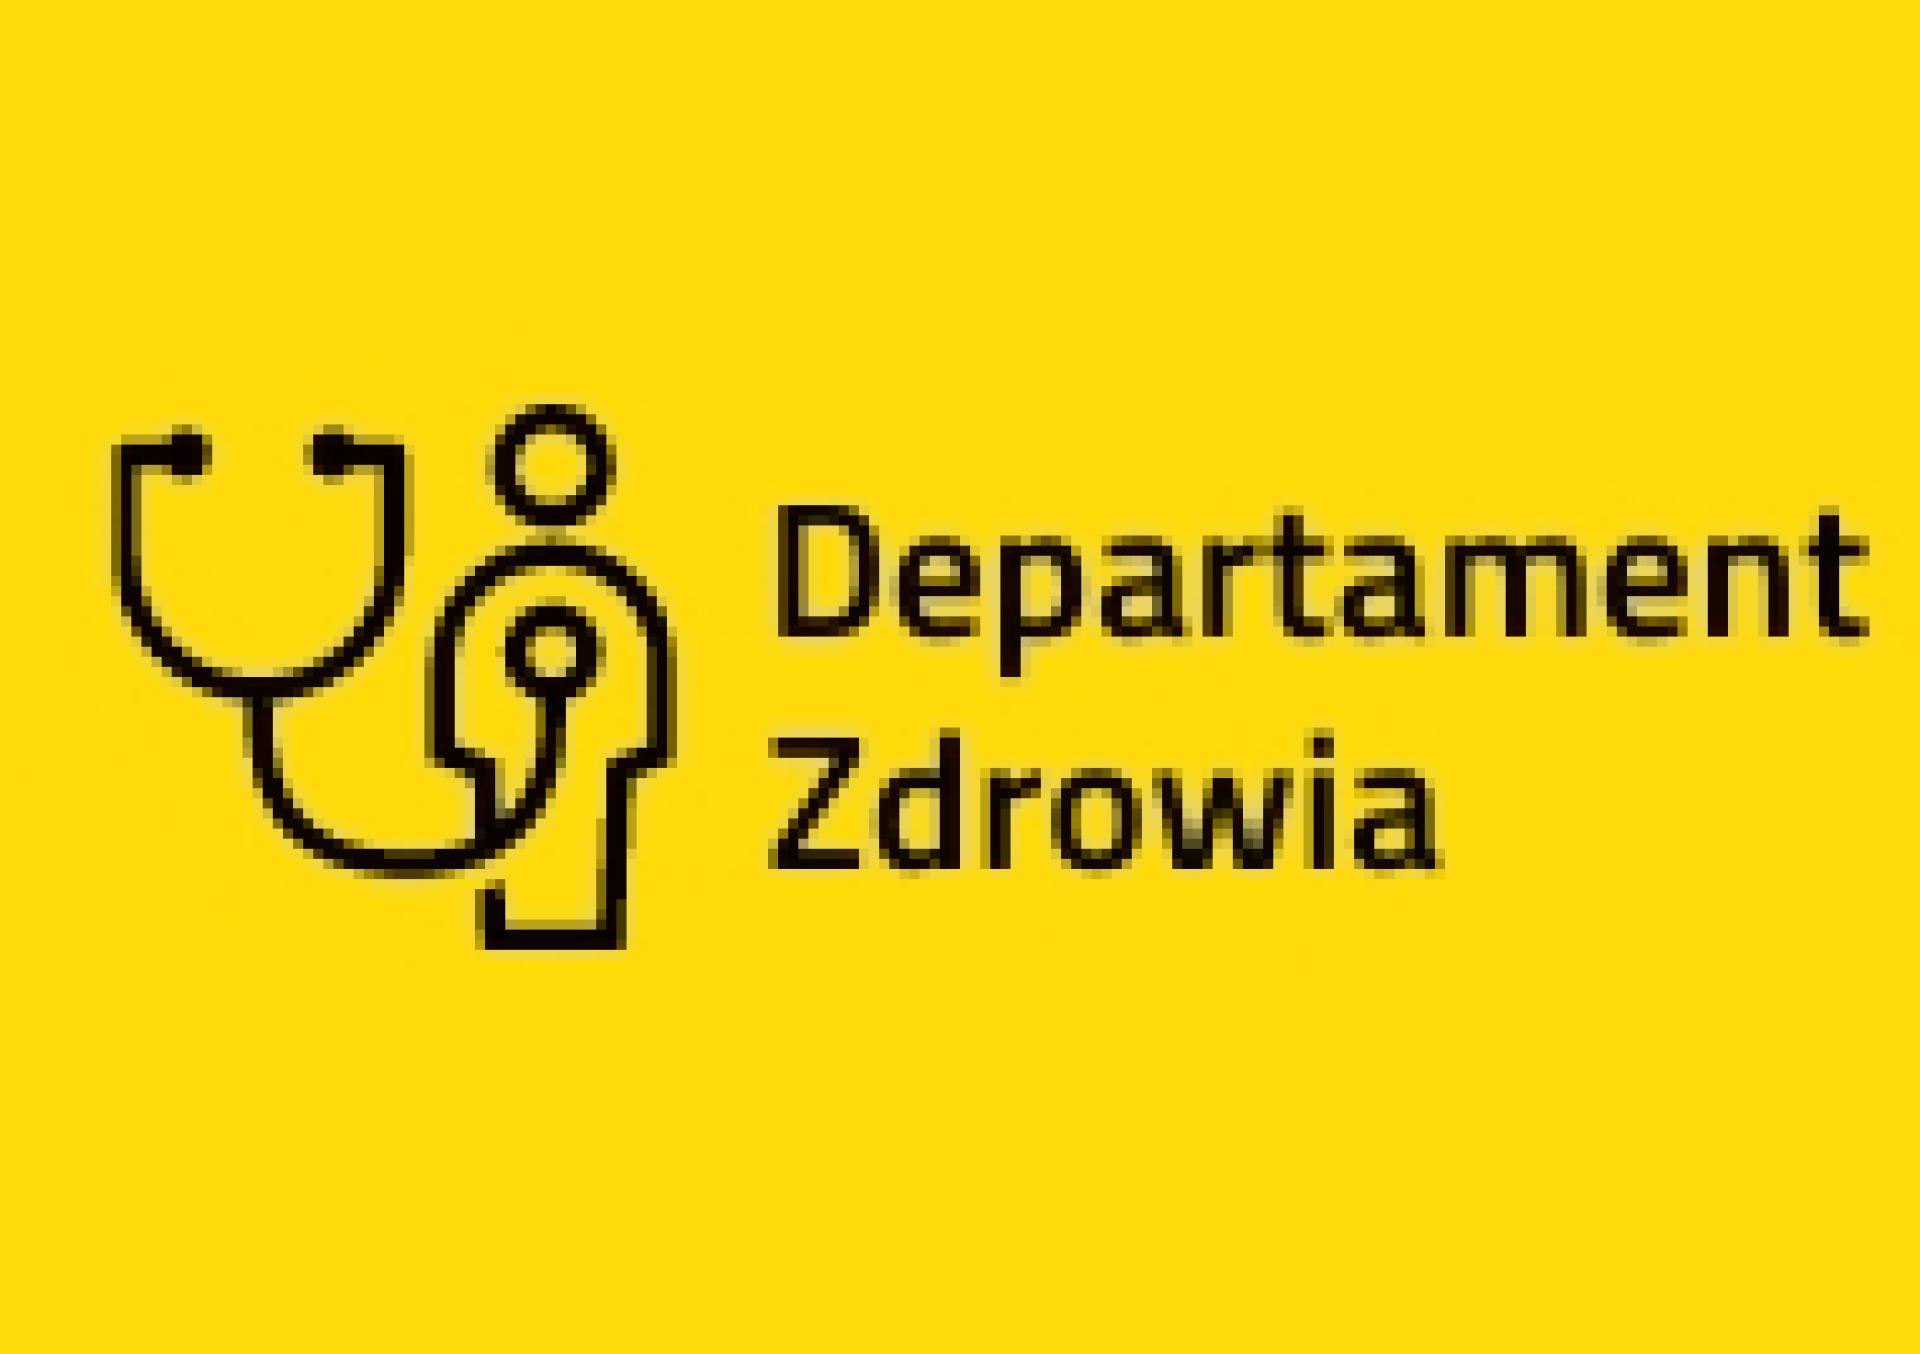 Konsultacje projektu uchwały Sejmiku zmieniającej statut Szpitala Wojewódzkiego w Poznaniu - zobacz więcej